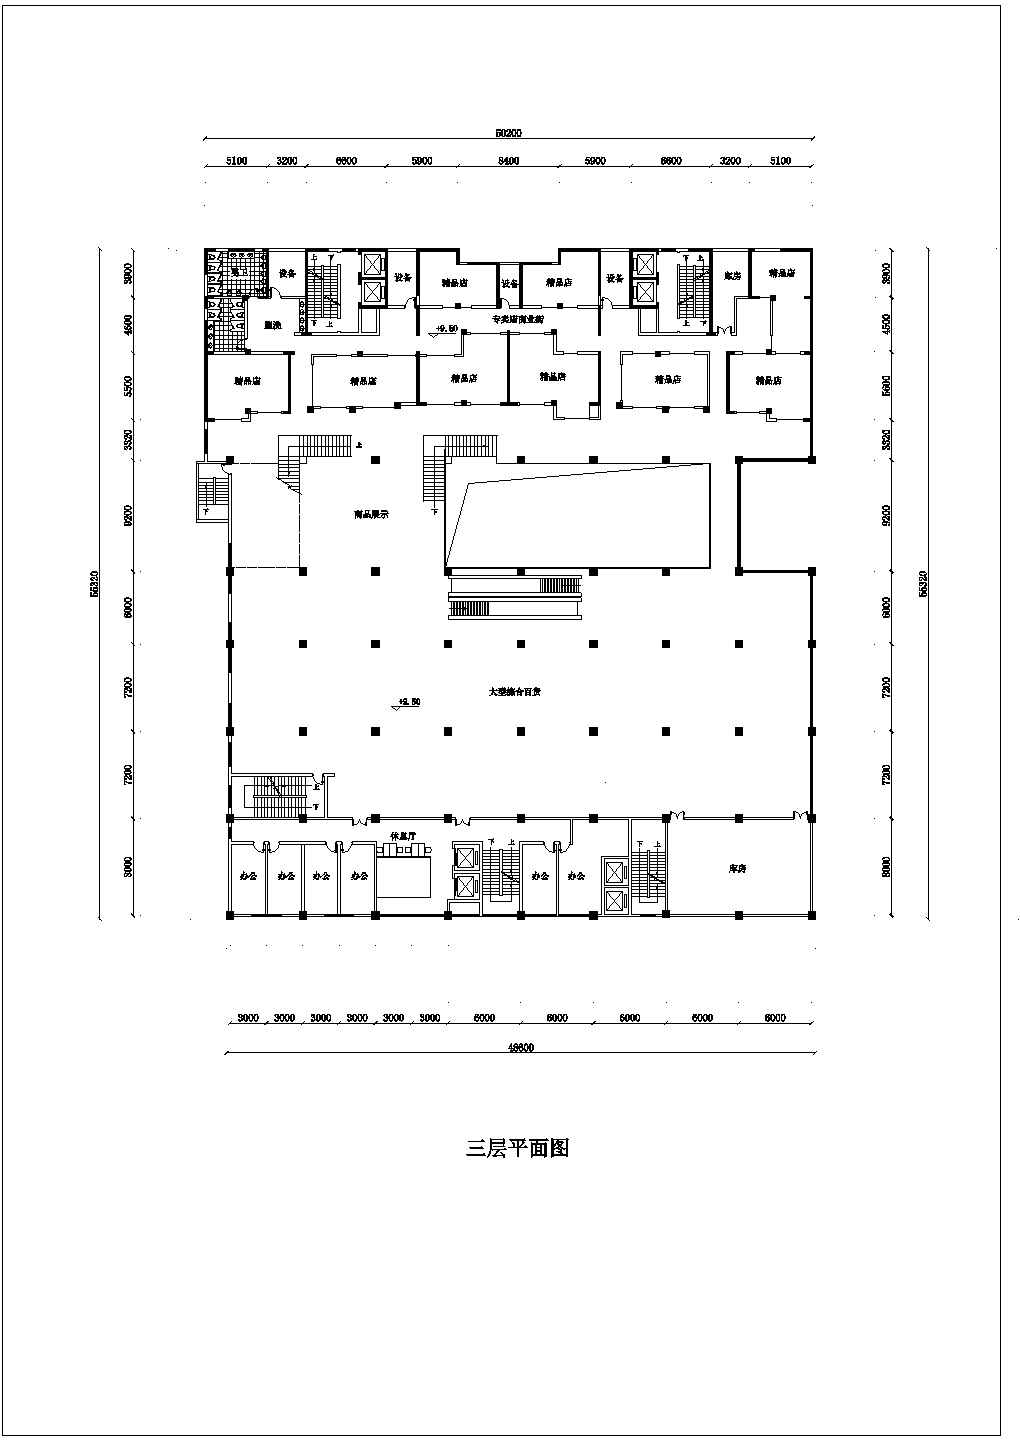 大型商场建筑方案CAD图纸